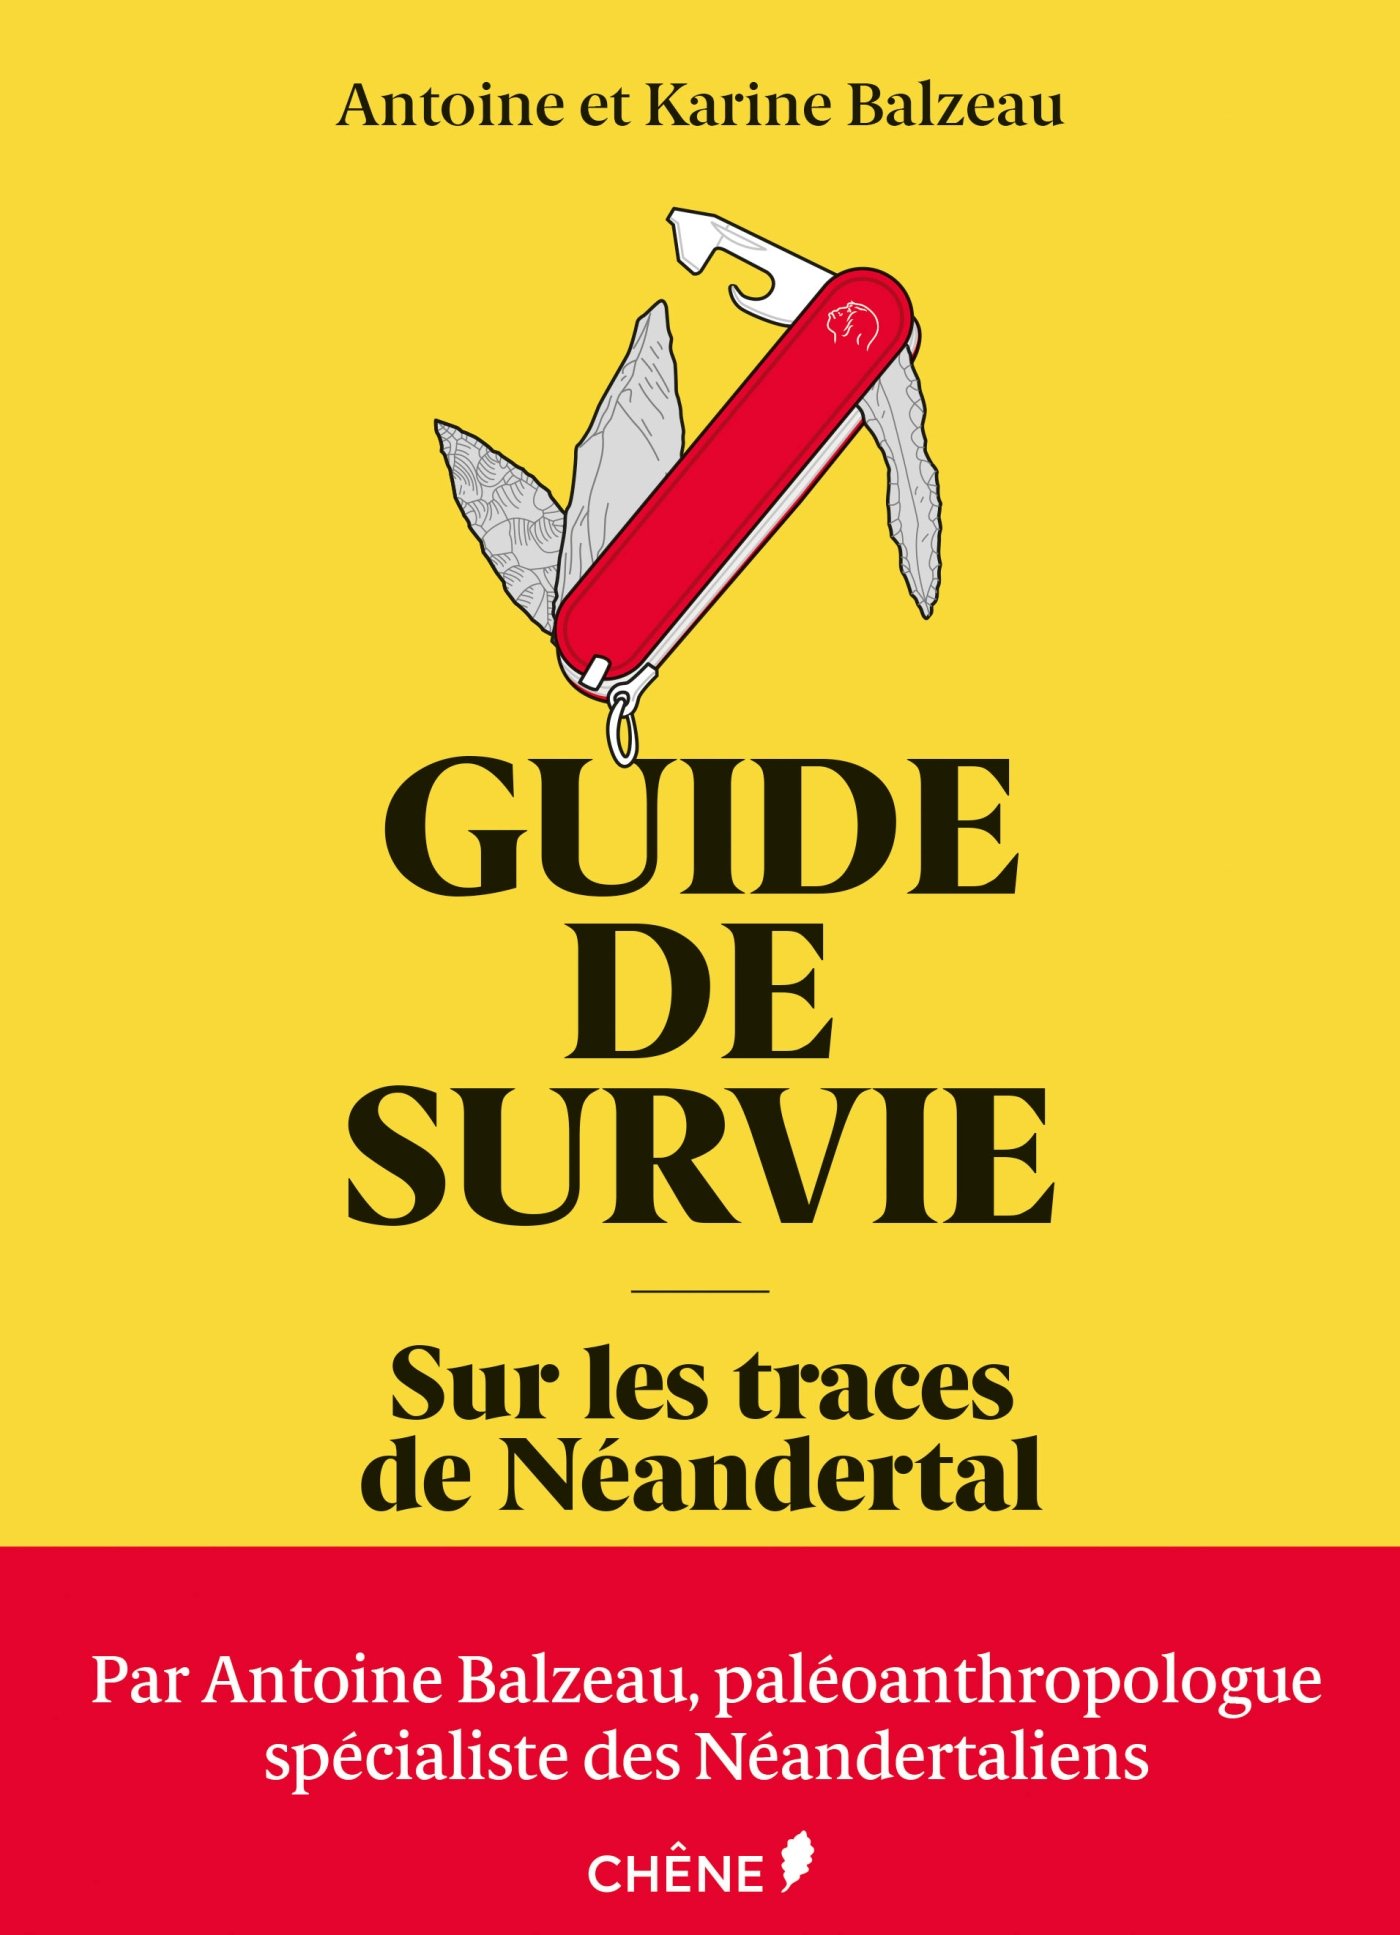 Guide de survie. Sur les traces de Néandertal, 2018, 144 p.